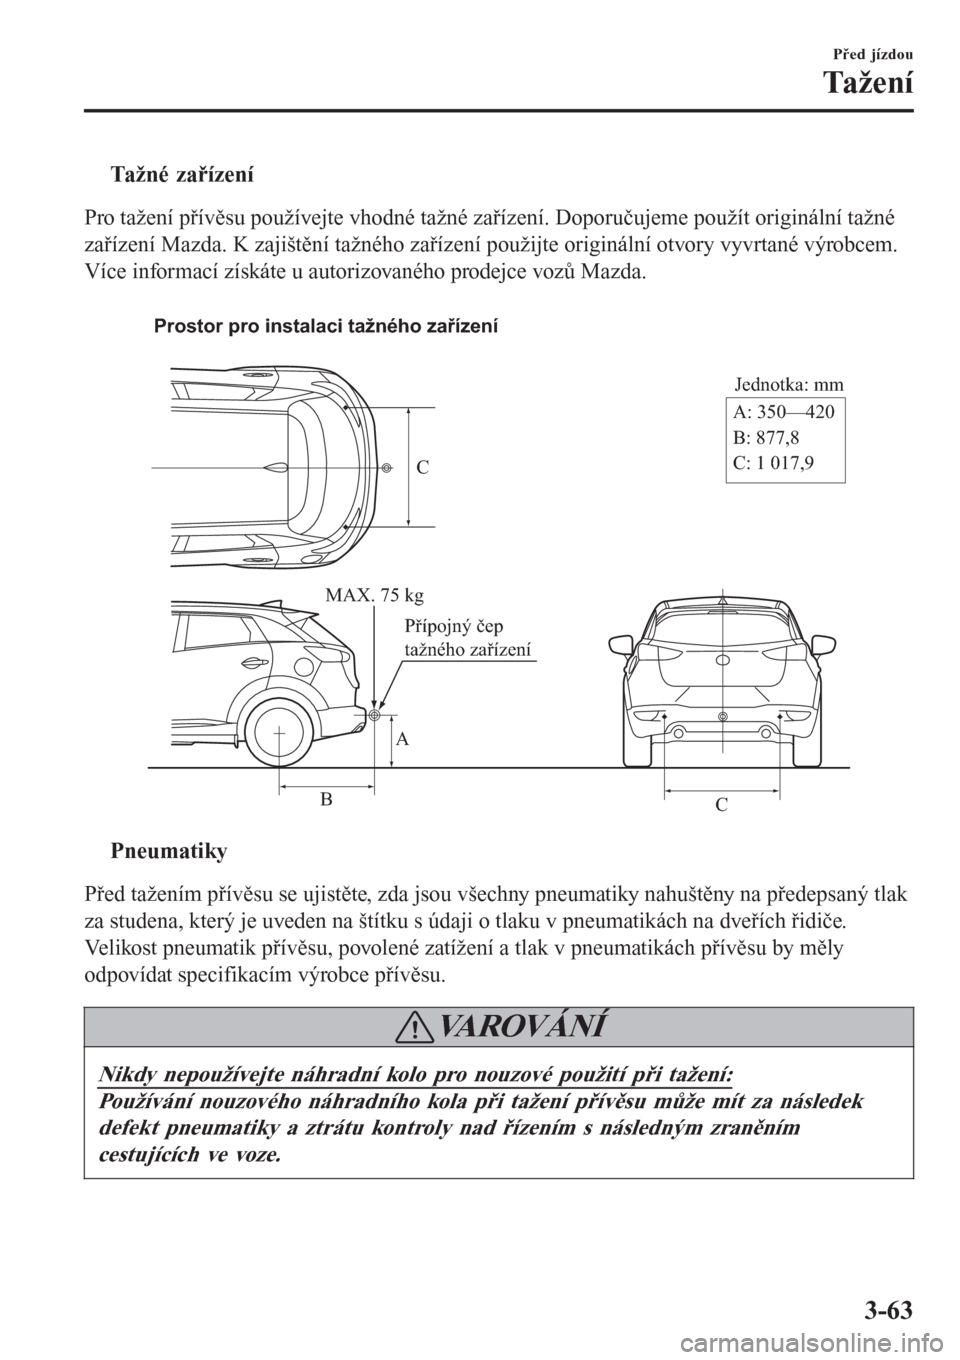 MAZDA MODEL CX-3 2015  Návod k obsluze (in Czech) tTažné zařízení
Pro tažení přívěsu používejte vhodné tažné zařízení. Doporučujeme použít originální tažné
zařízení Mazda. K zajištění tažného zařízení použijte ori